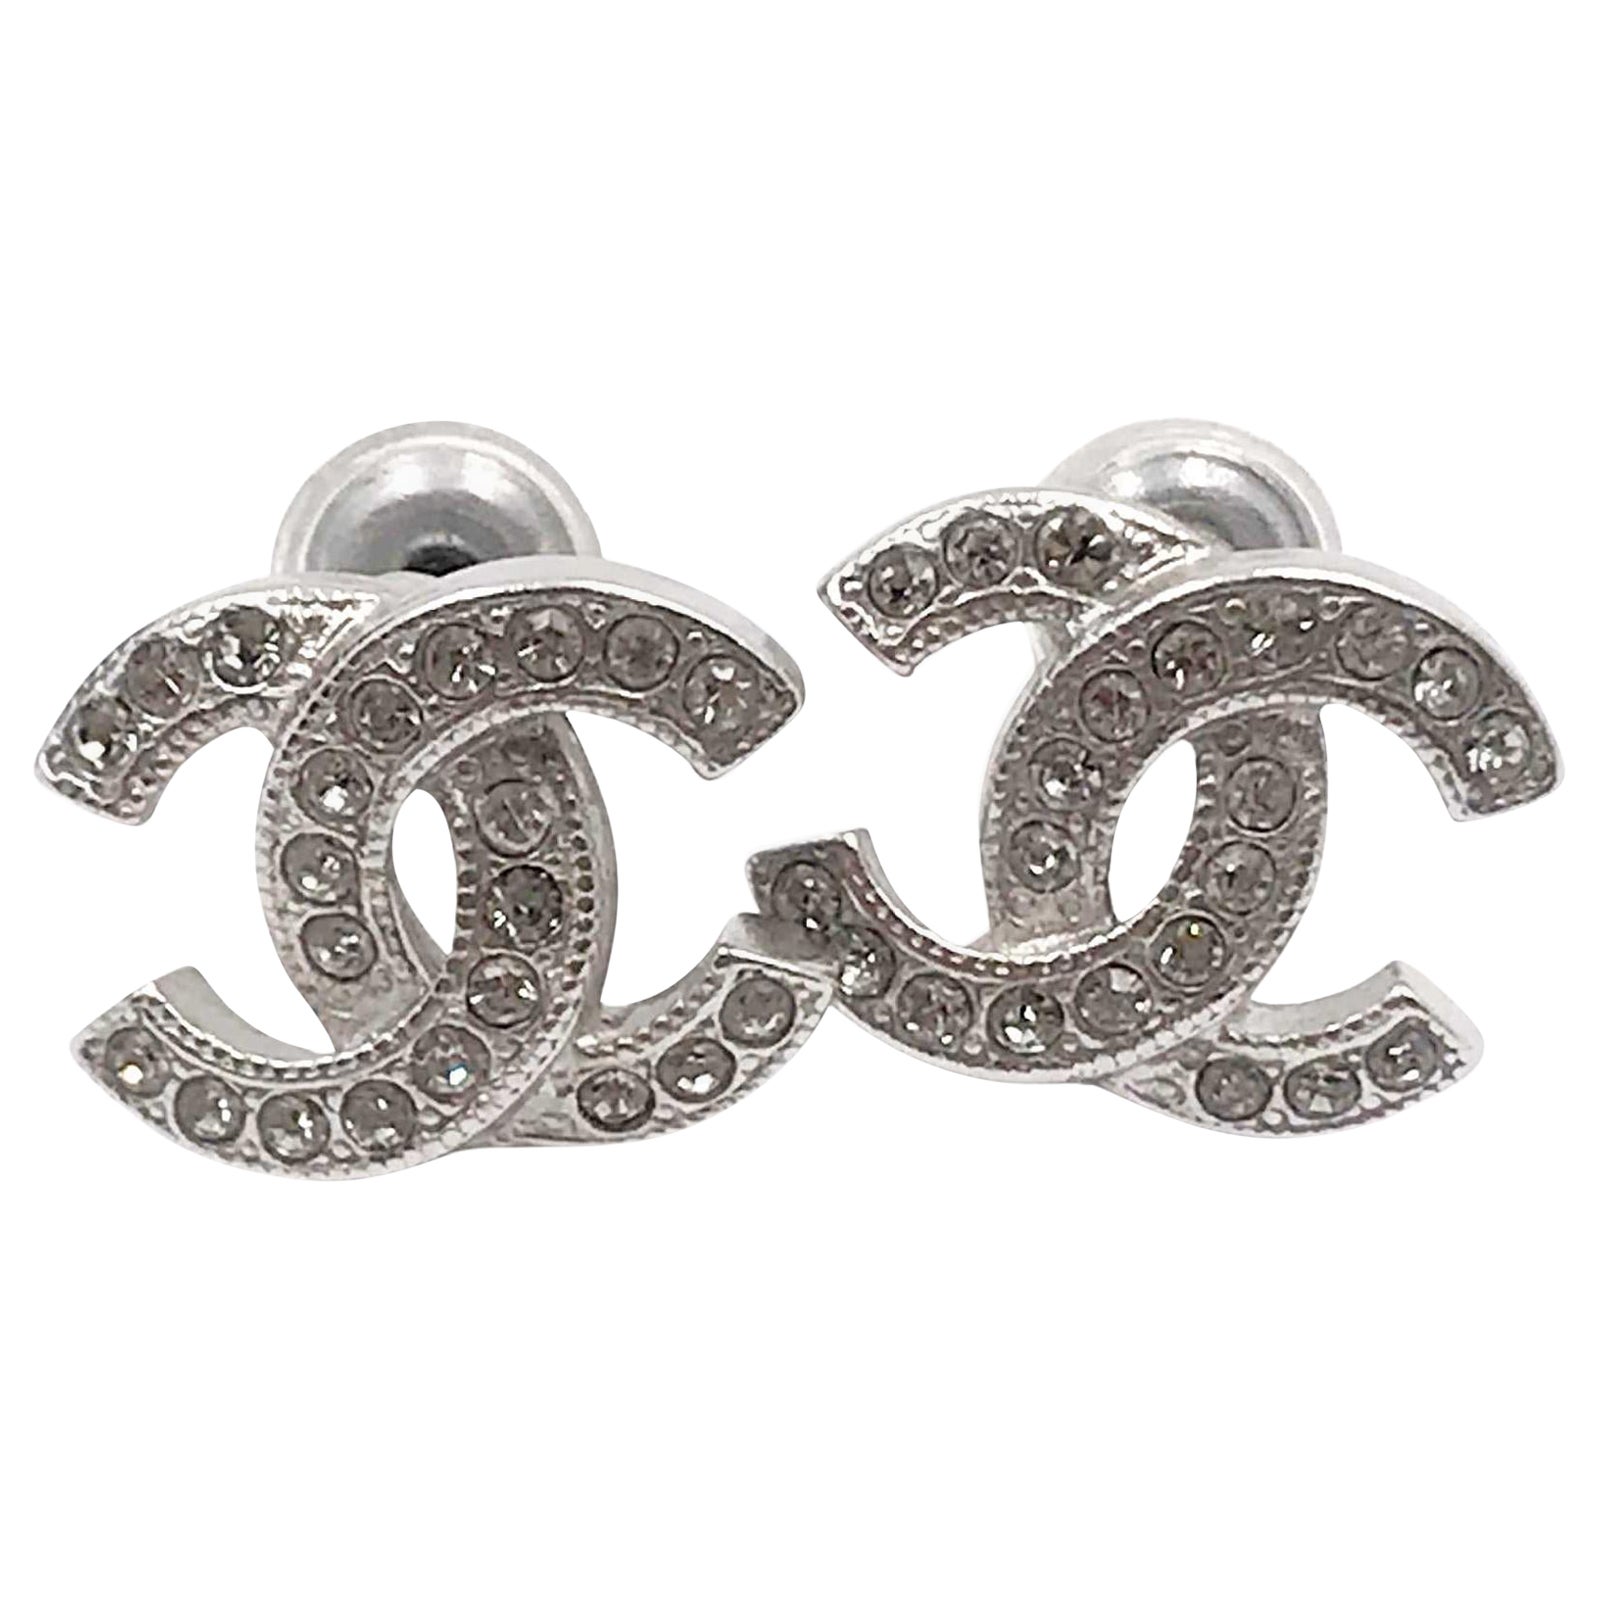 Chanel Klassische Silber CC Kristall-Ohrringe mit durchbrochenem Kristall, brandneu